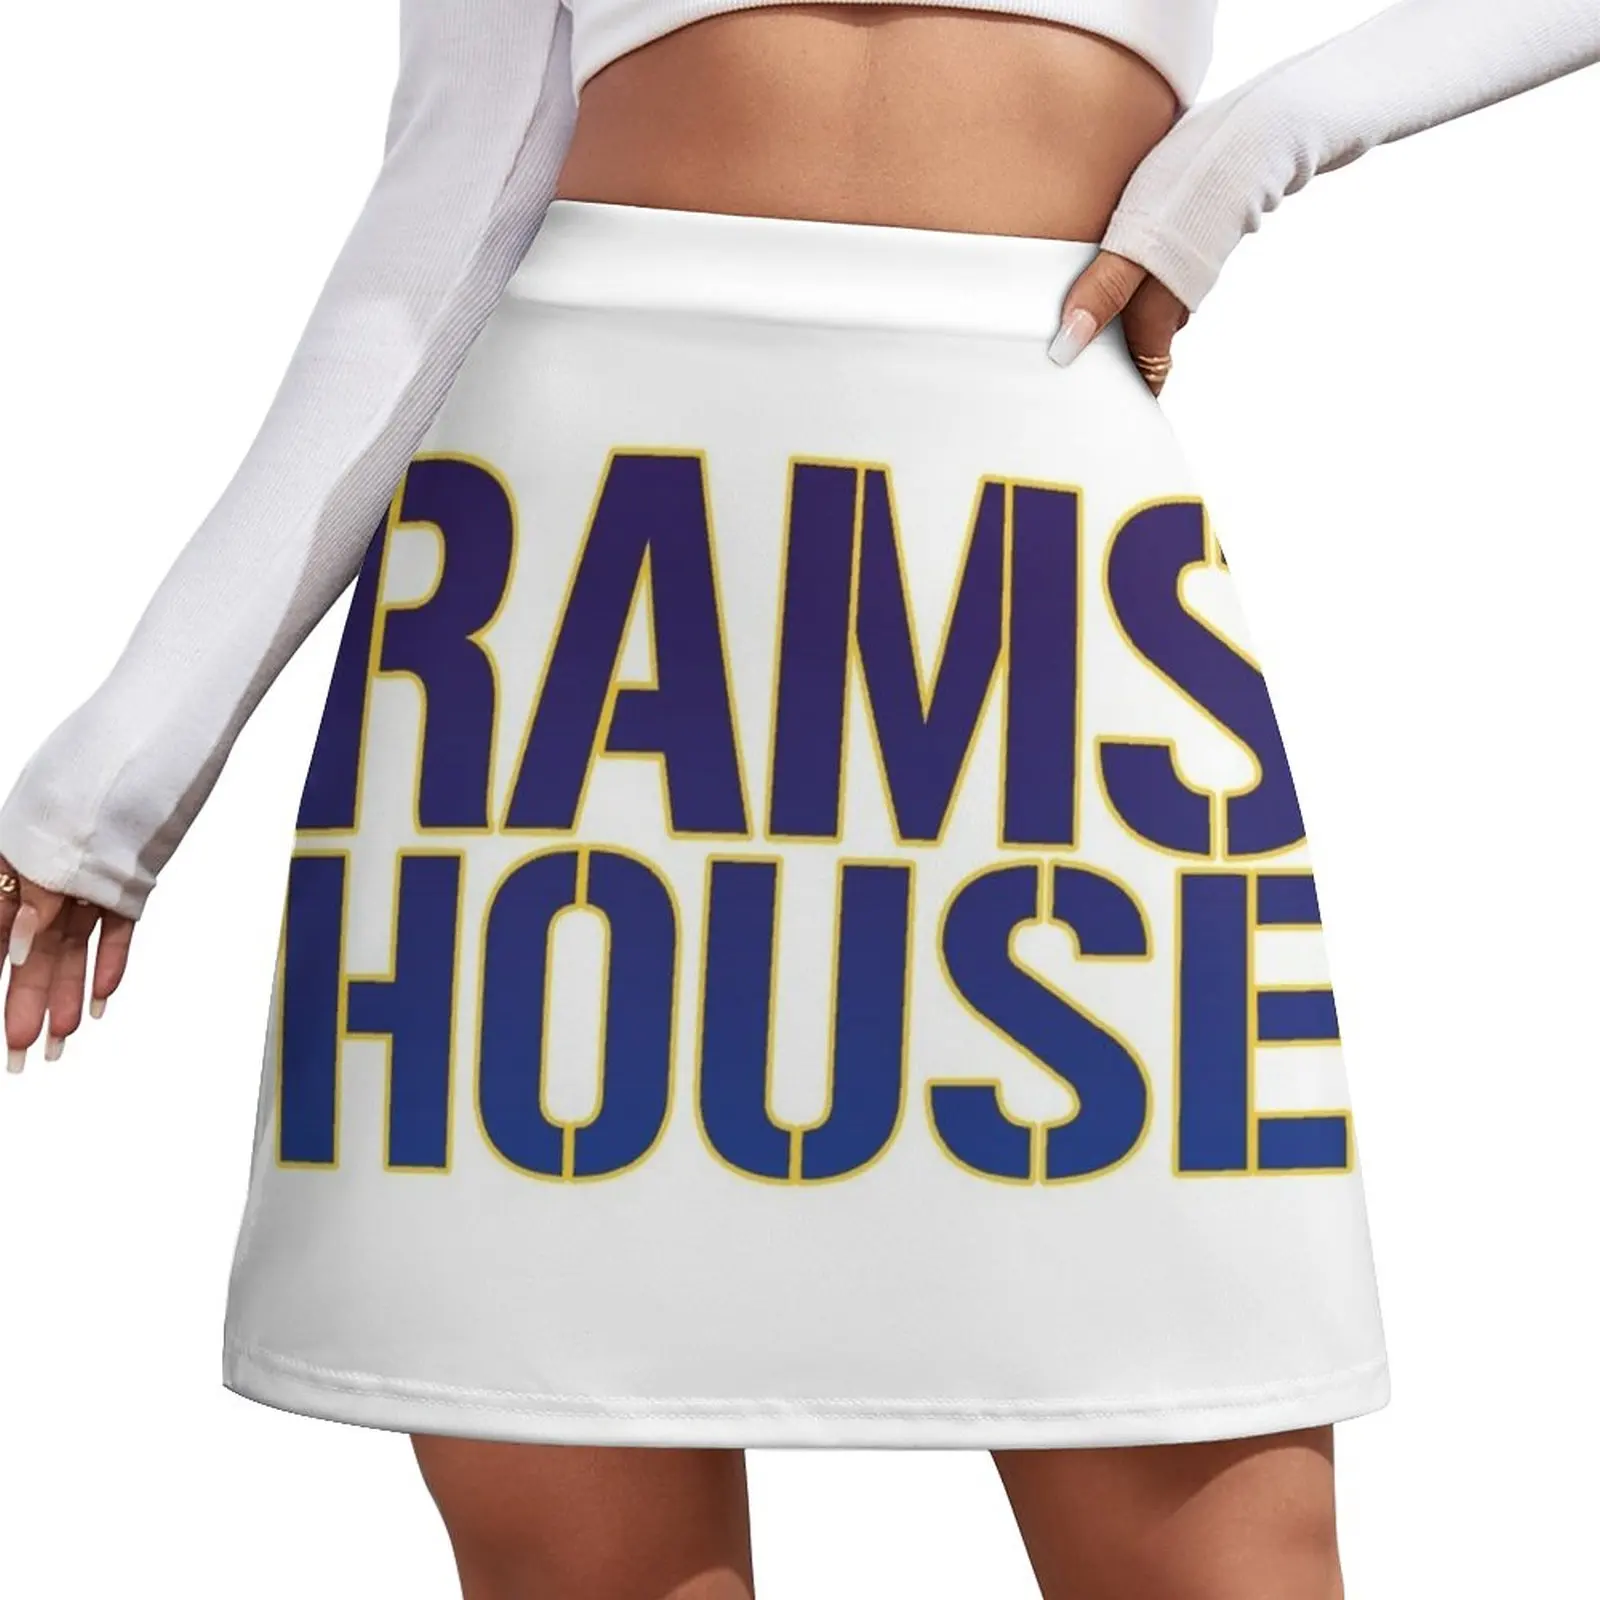 Мини-юбка Rams House, одежда в корейском стиле, одежда для ночного клуба, женская одежда 0